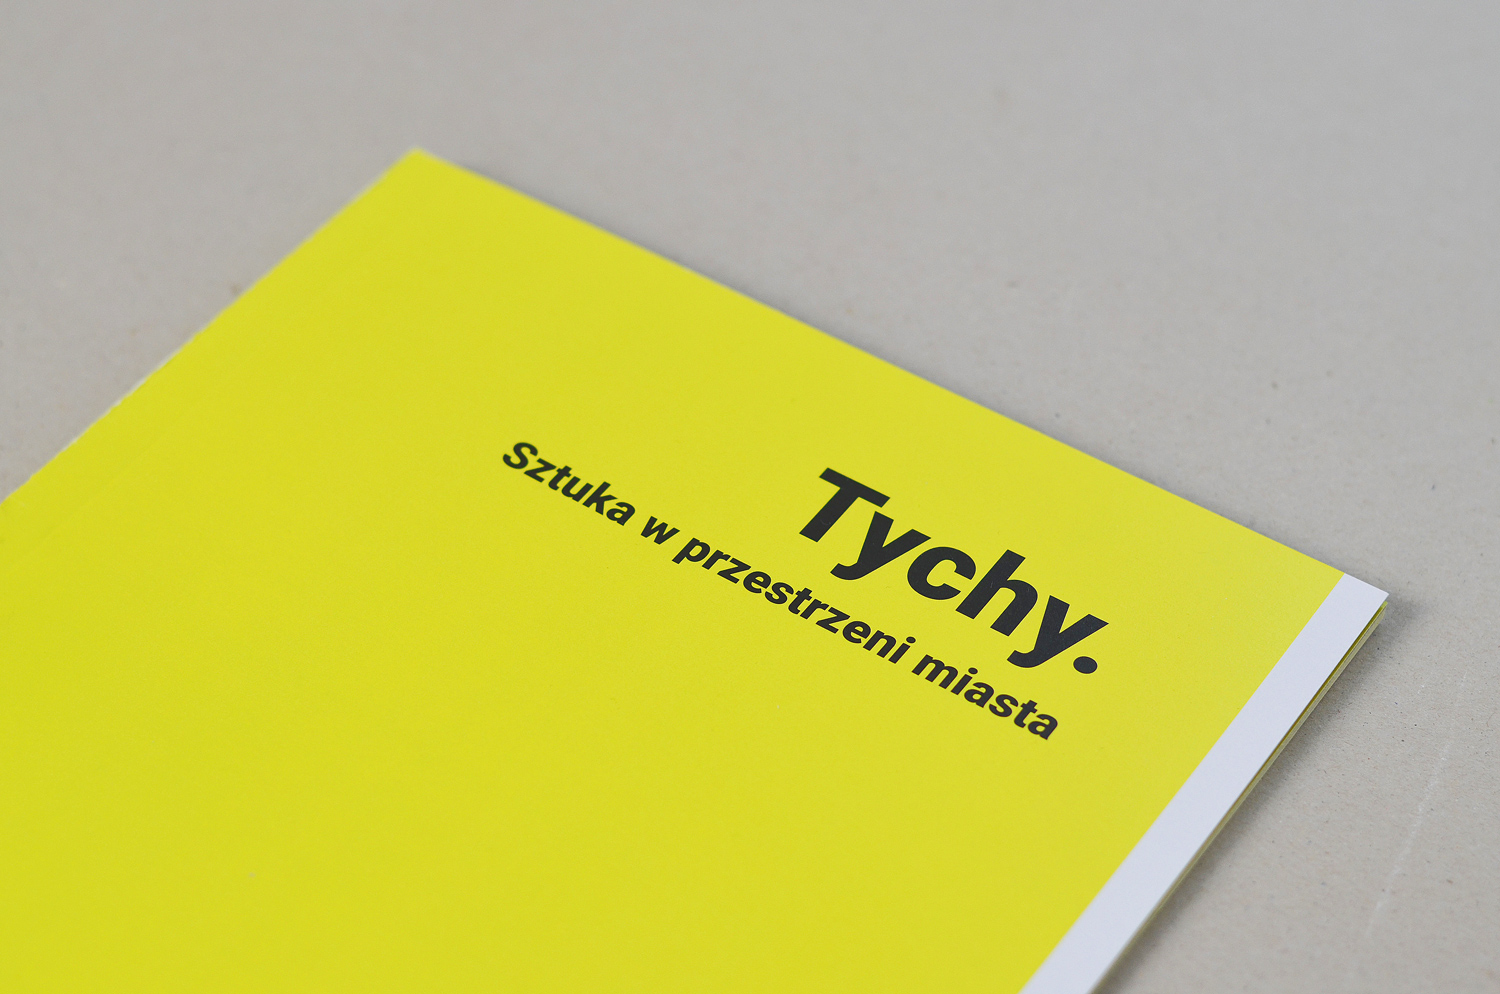 Publication design - contrast, typography, vivid colour. 